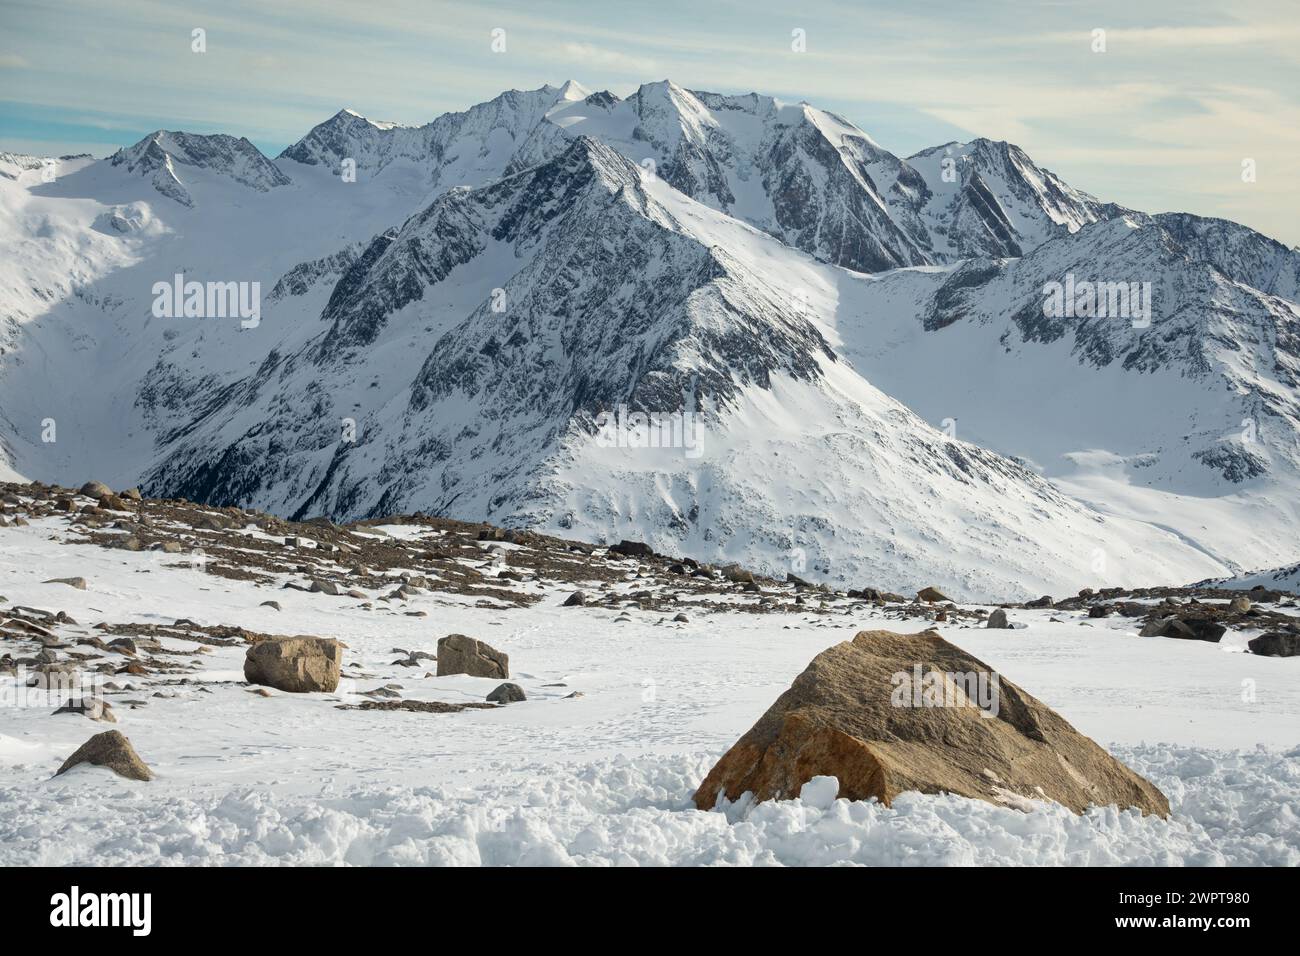 Paysage alpin avec des roches jaunes à l'avant et des sommets couverts de neige et de nuages, de belles couleurs au sommet d'un glacier, Hintertux, Autriche Banque D'Images